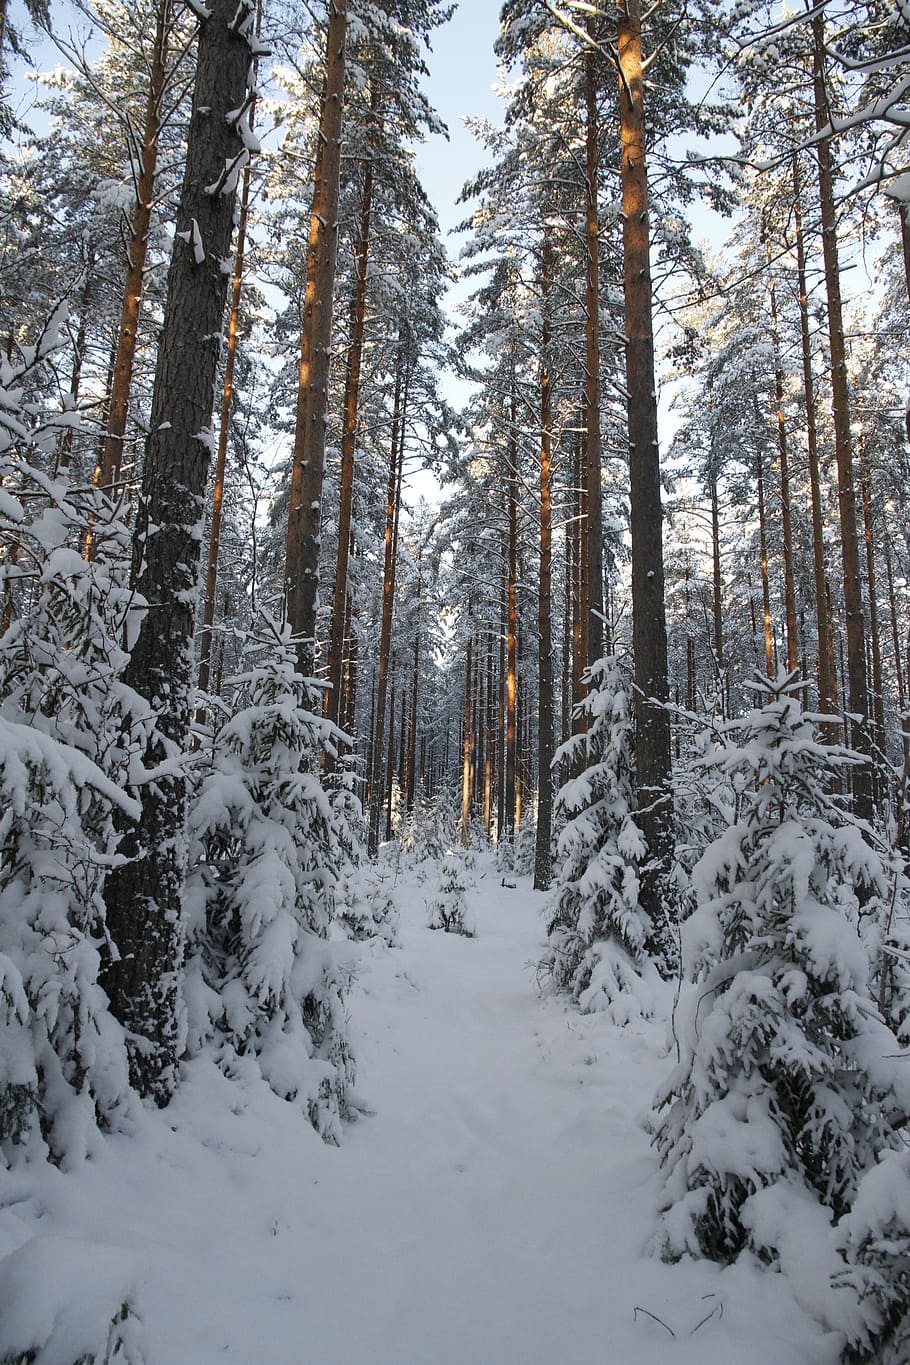 invierno, bosque, nieve, blanco, naturaleza, época del año, paisaje nevado, pinos, temperatura fría, árbol